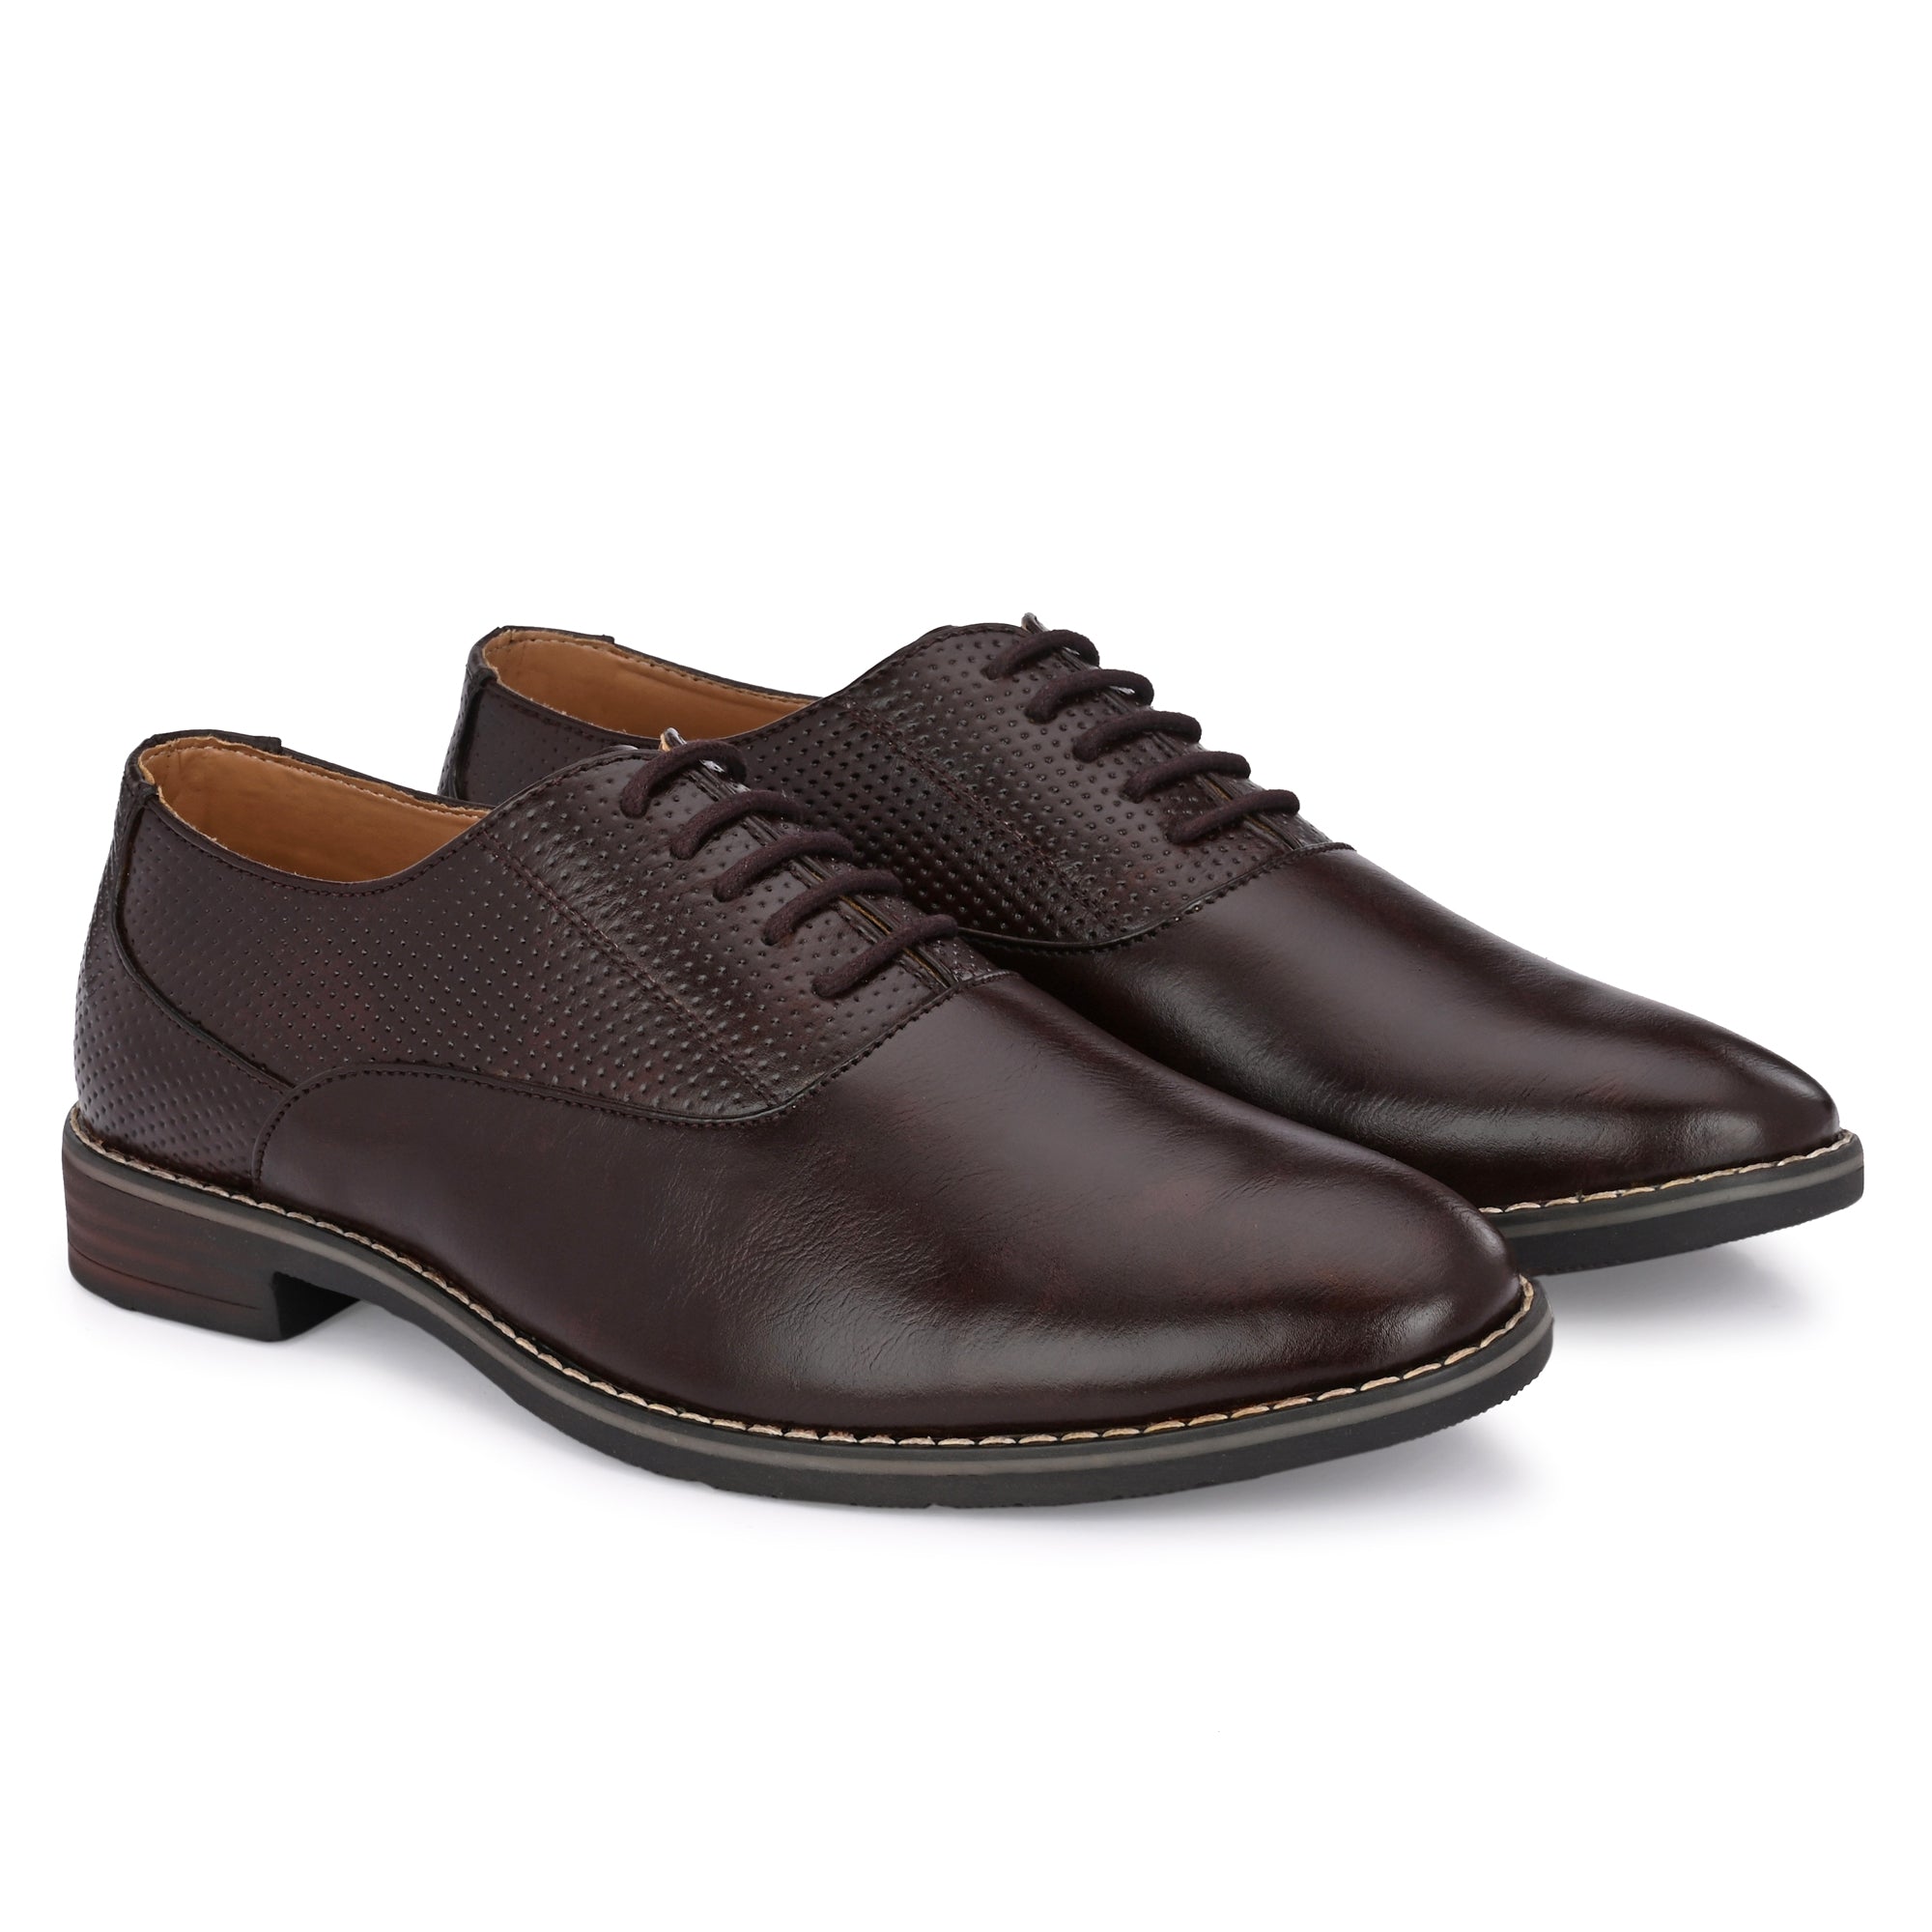 brown-formal-lace-up-attitudist-shoes-for-men-sp7b